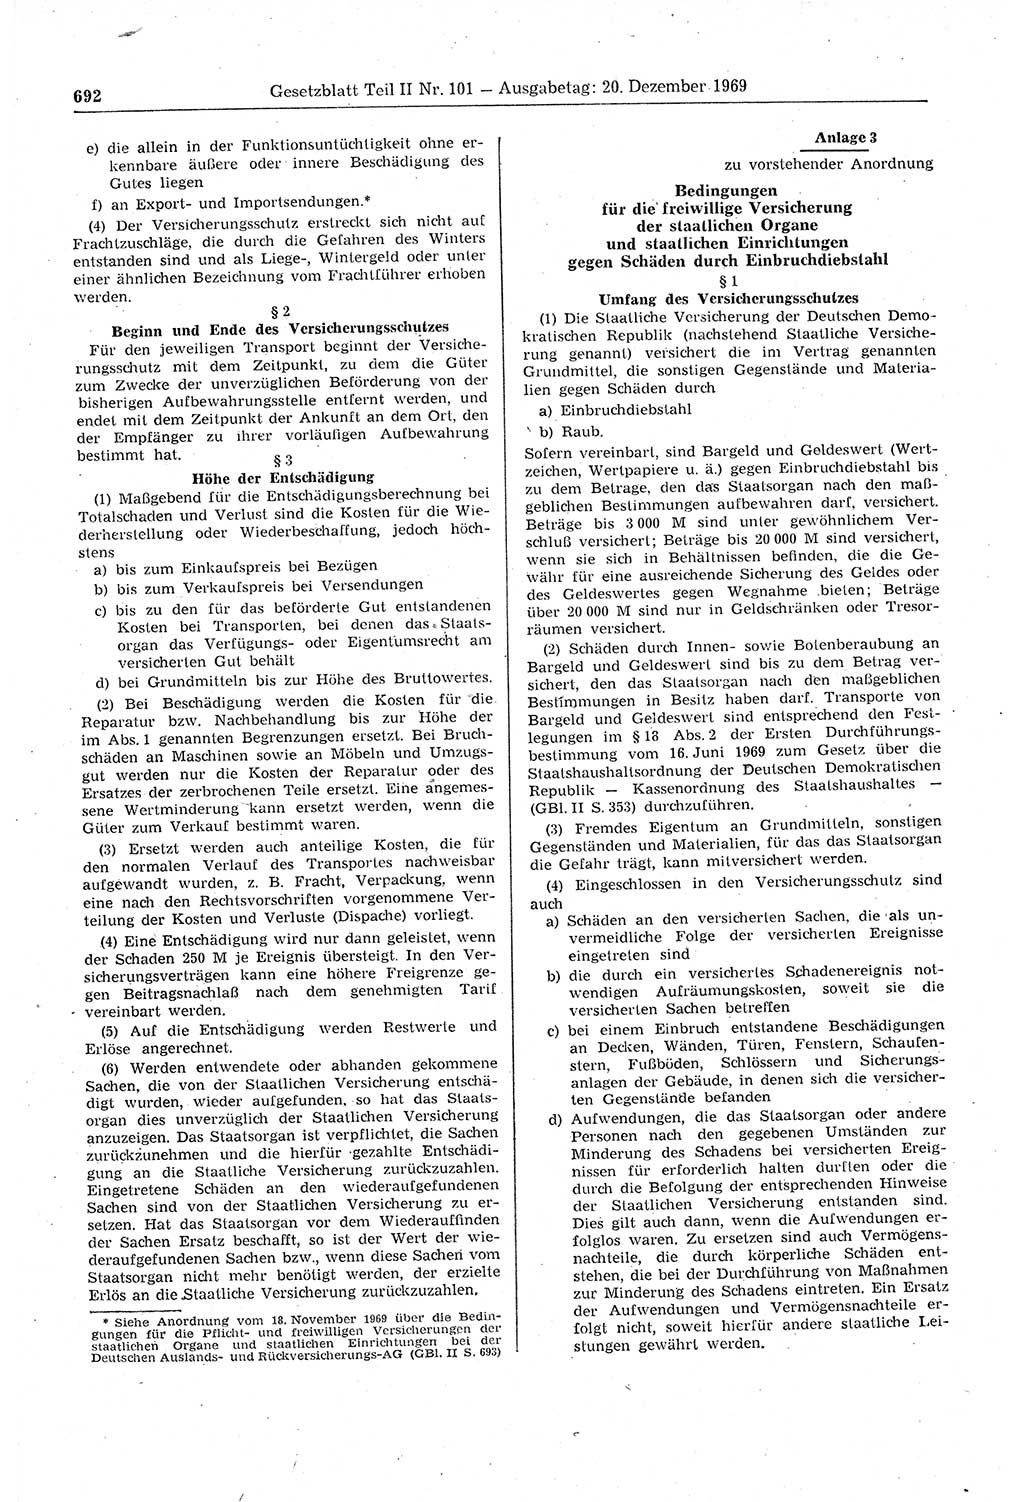 Gesetzblatt (GBl.) der Deutschen Demokratischen Republik (DDR) Teil ⅠⅠ 1969, Seite 692 (GBl. DDR ⅠⅠ 1969, S. 692)